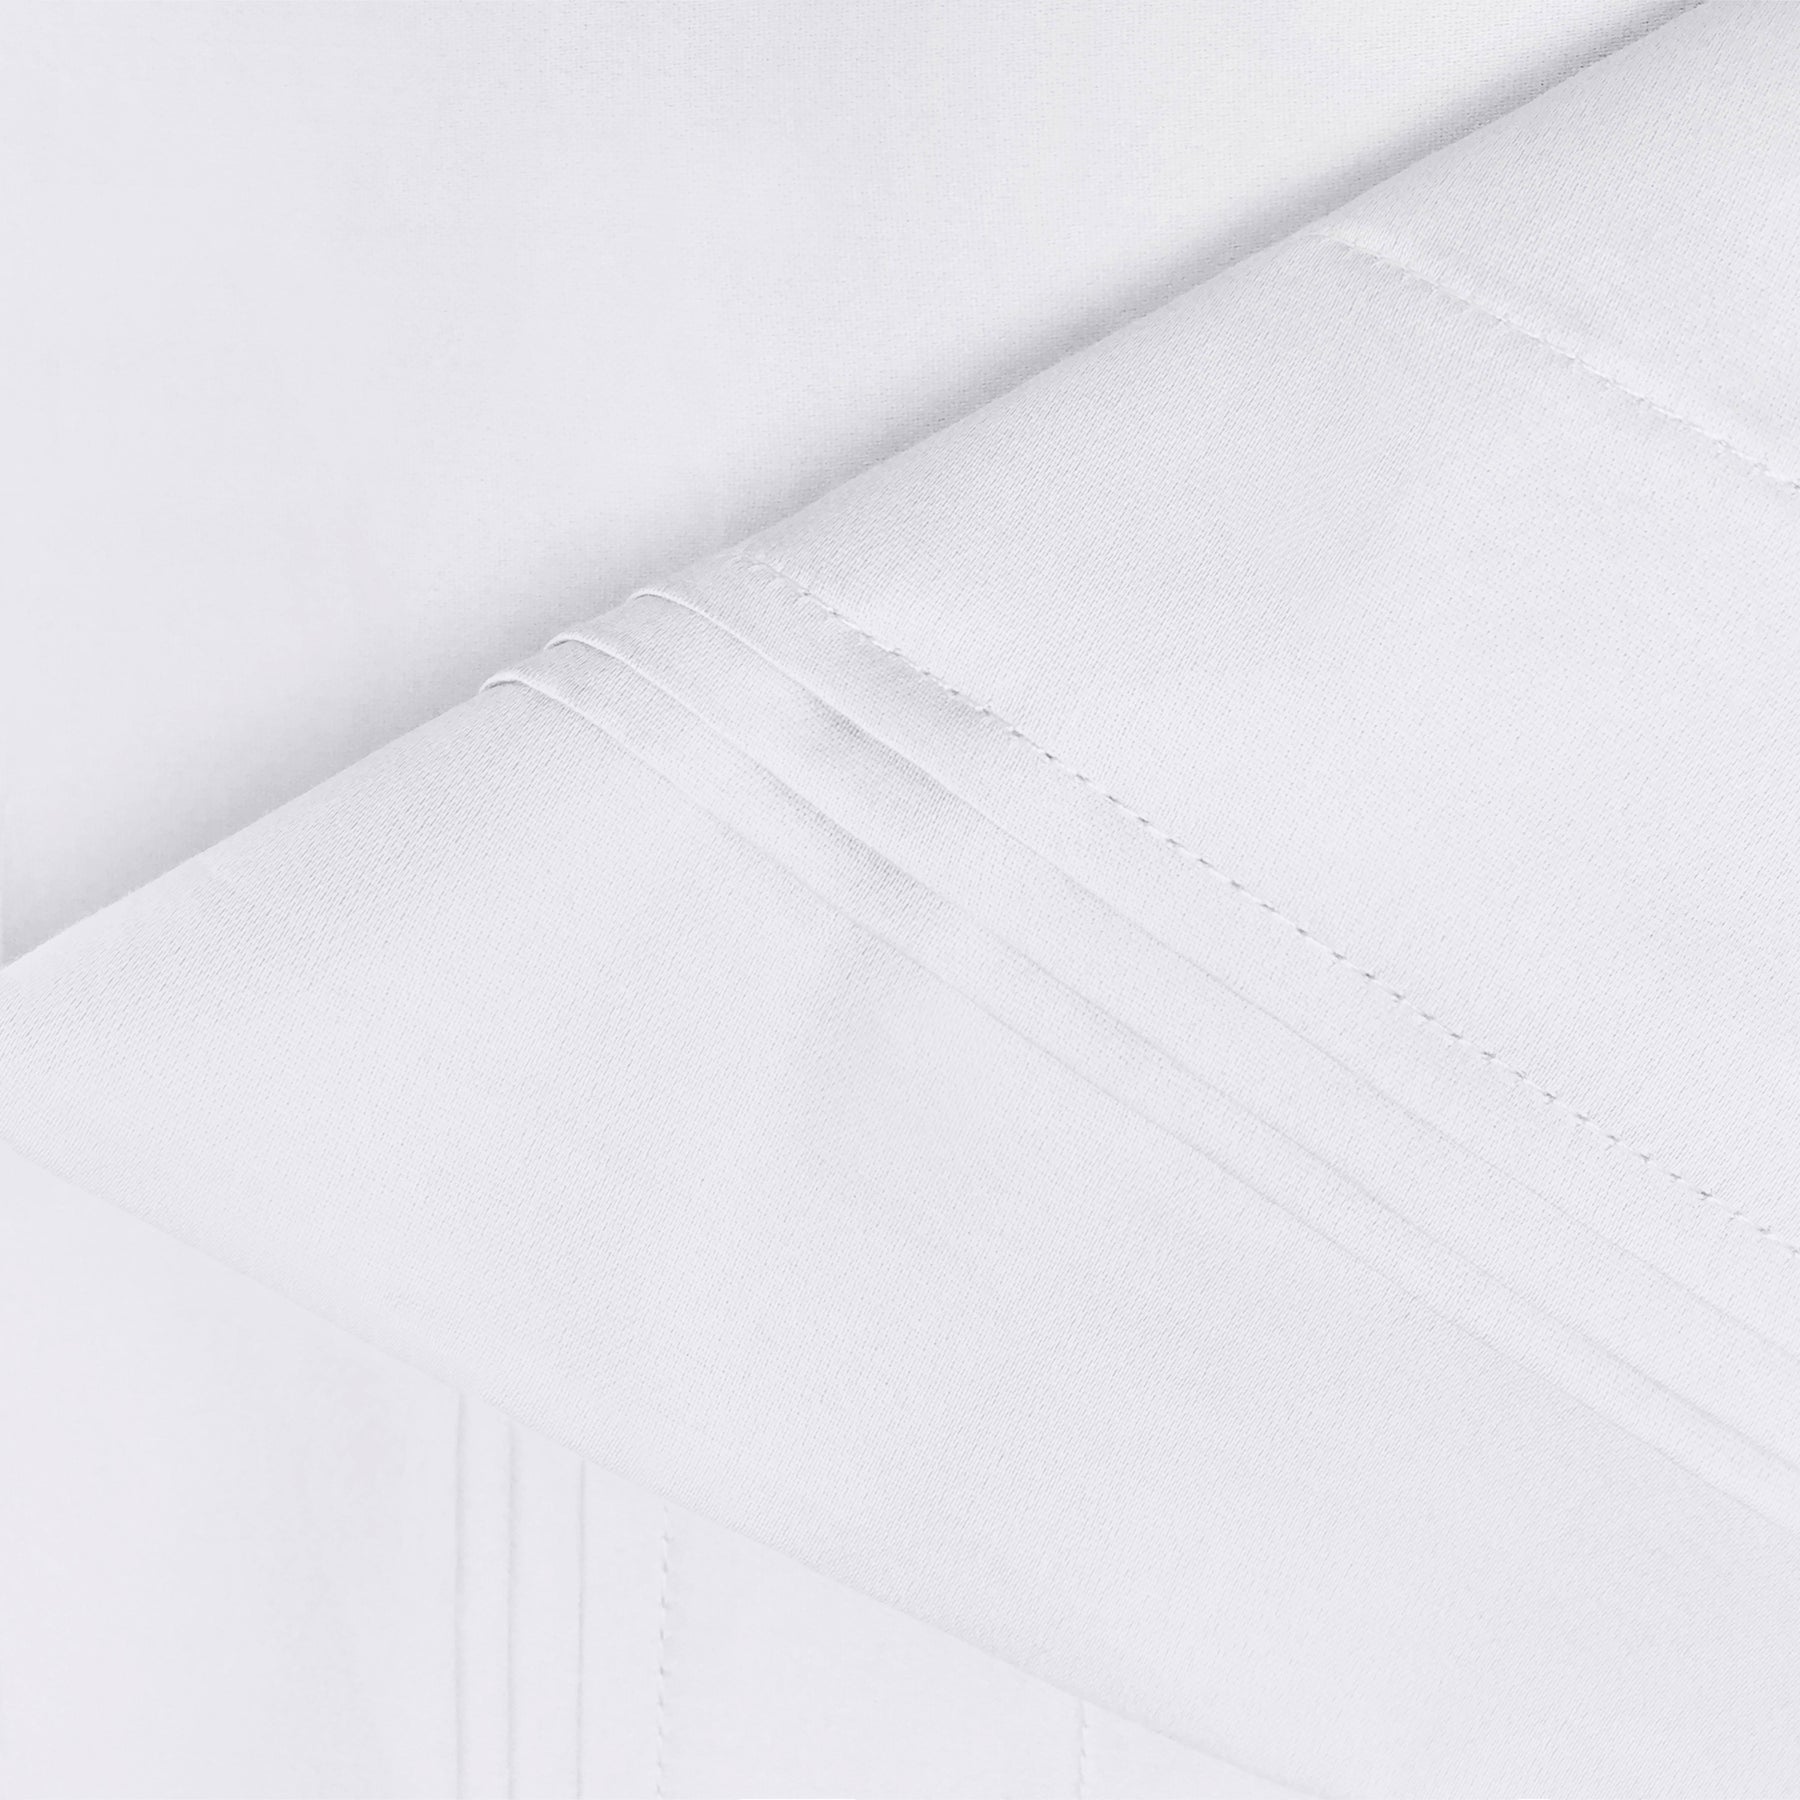 Superior 1000-Thread Count Egyptian Cotton Solid Pillowcase Set - White